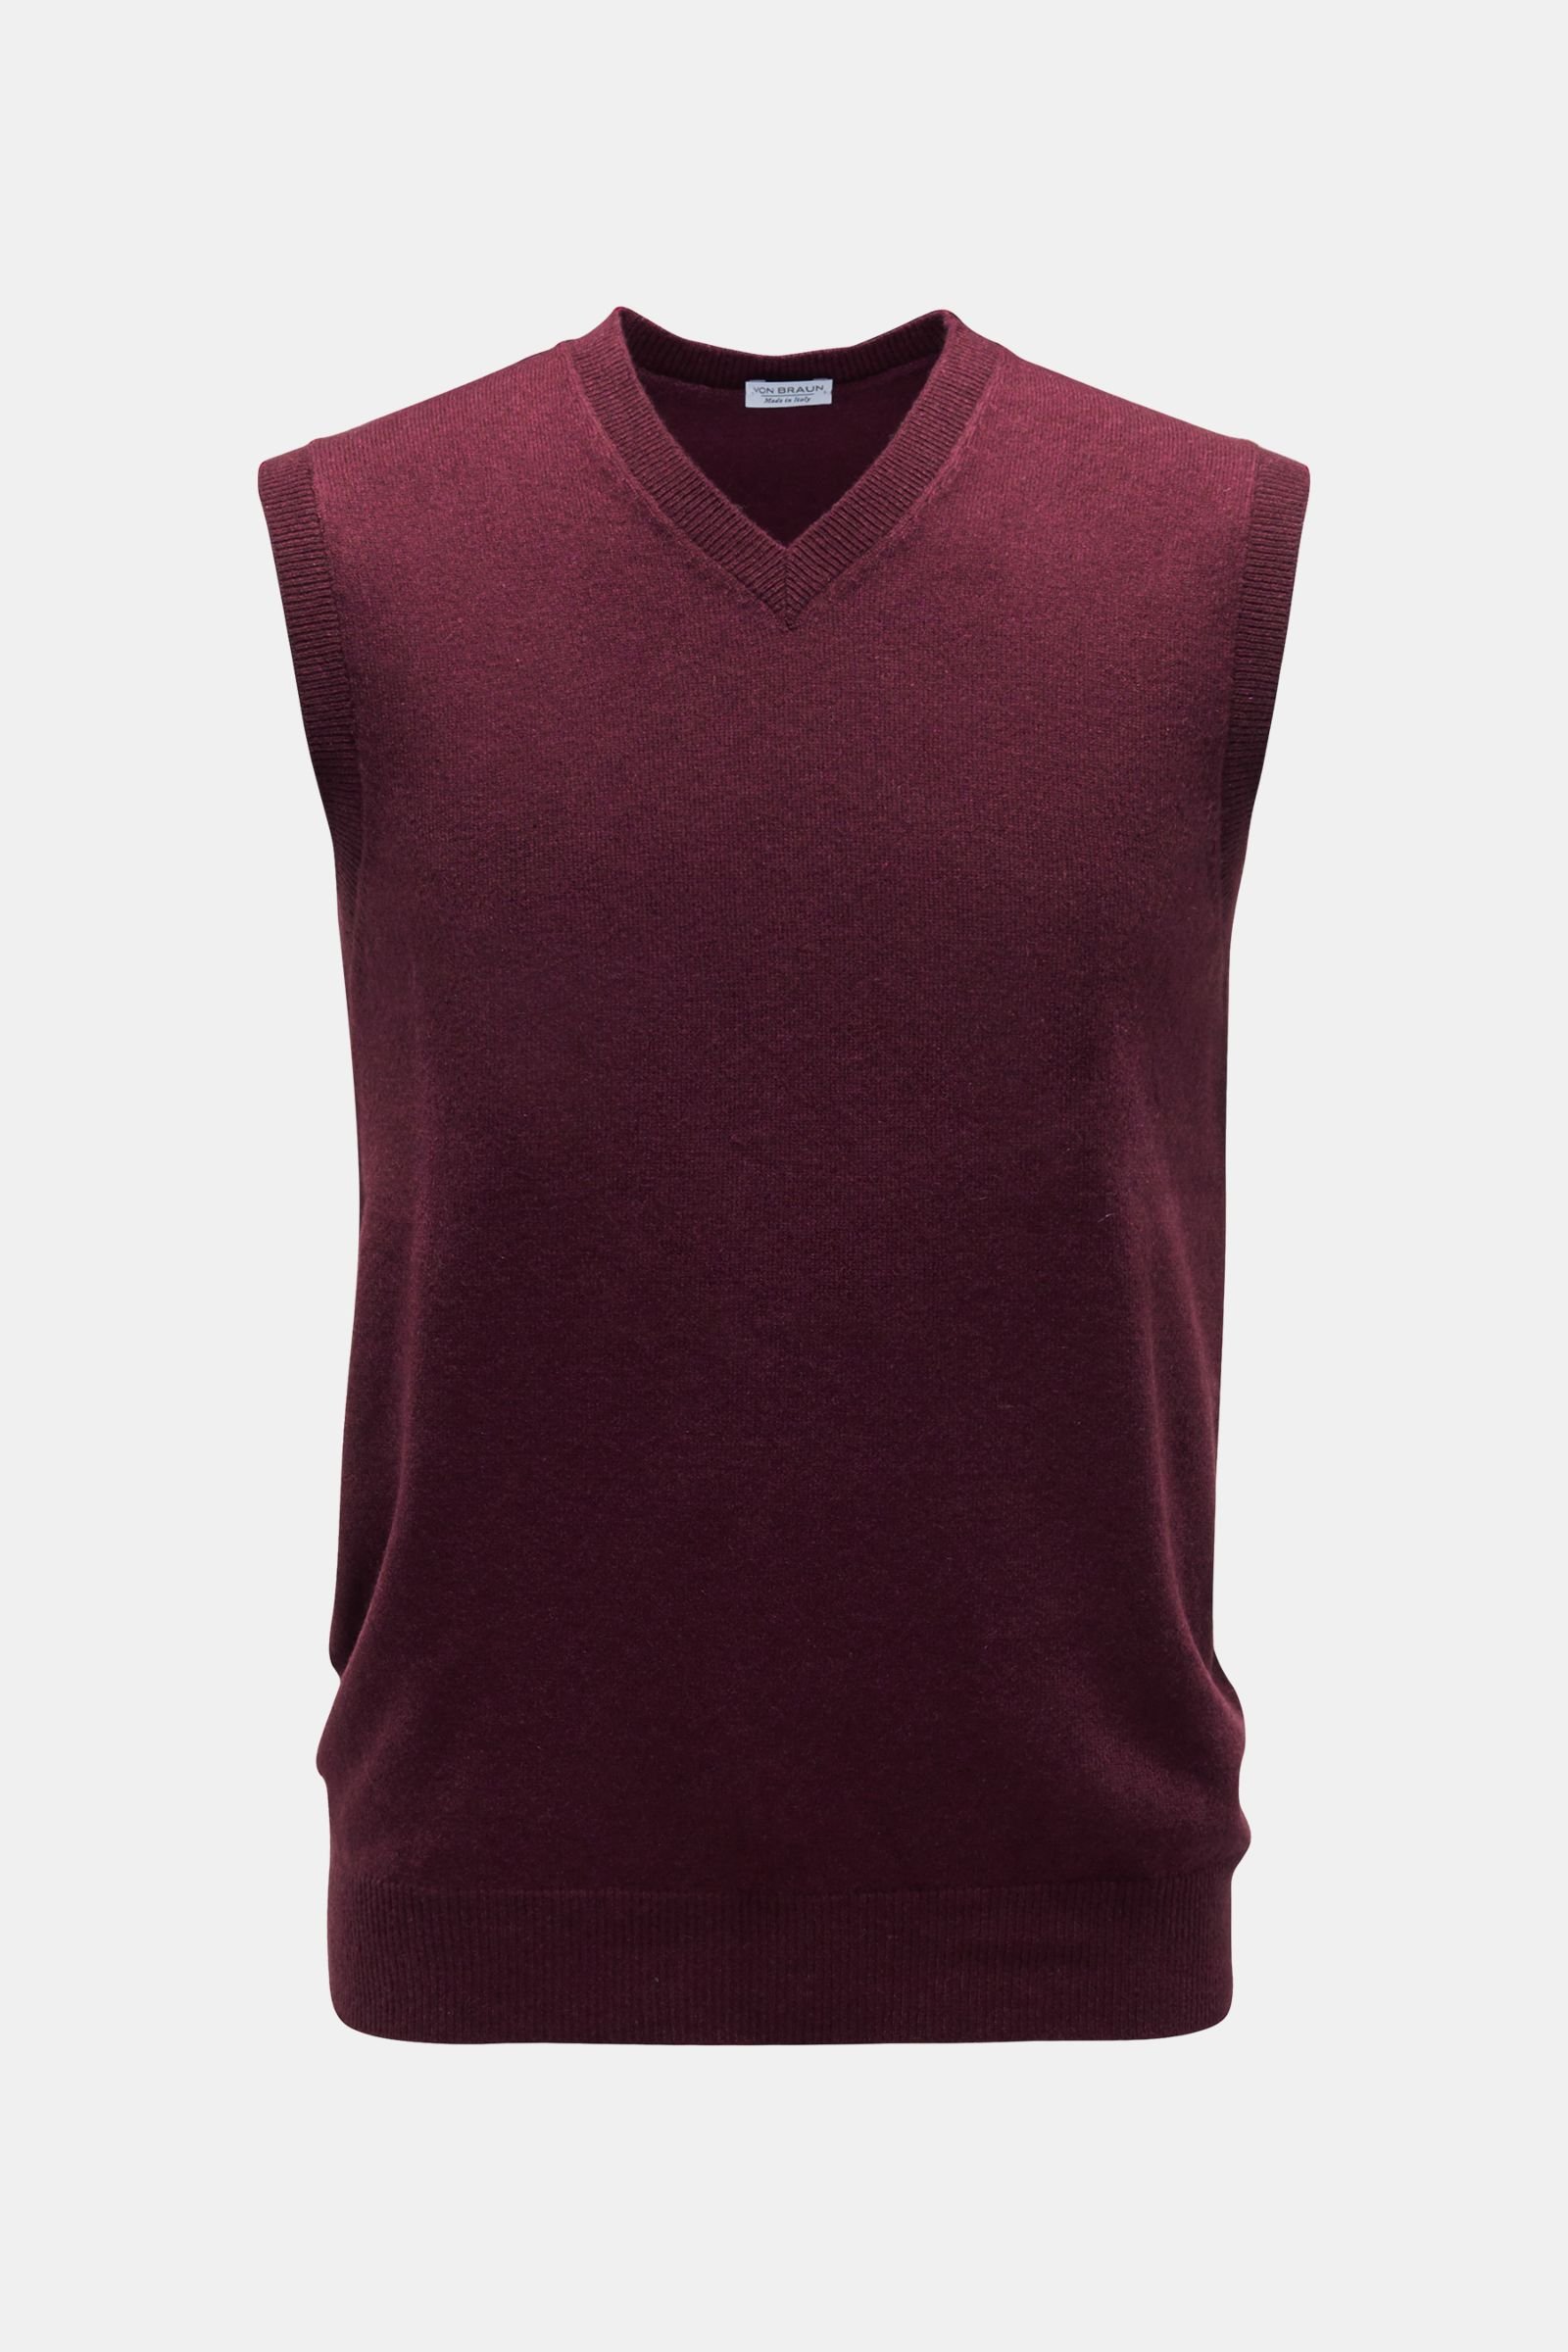 samenzwering Monopoly Roman VON BRAUN cashmere V-neck sweater vest burgundy | BRAUN Hamburg